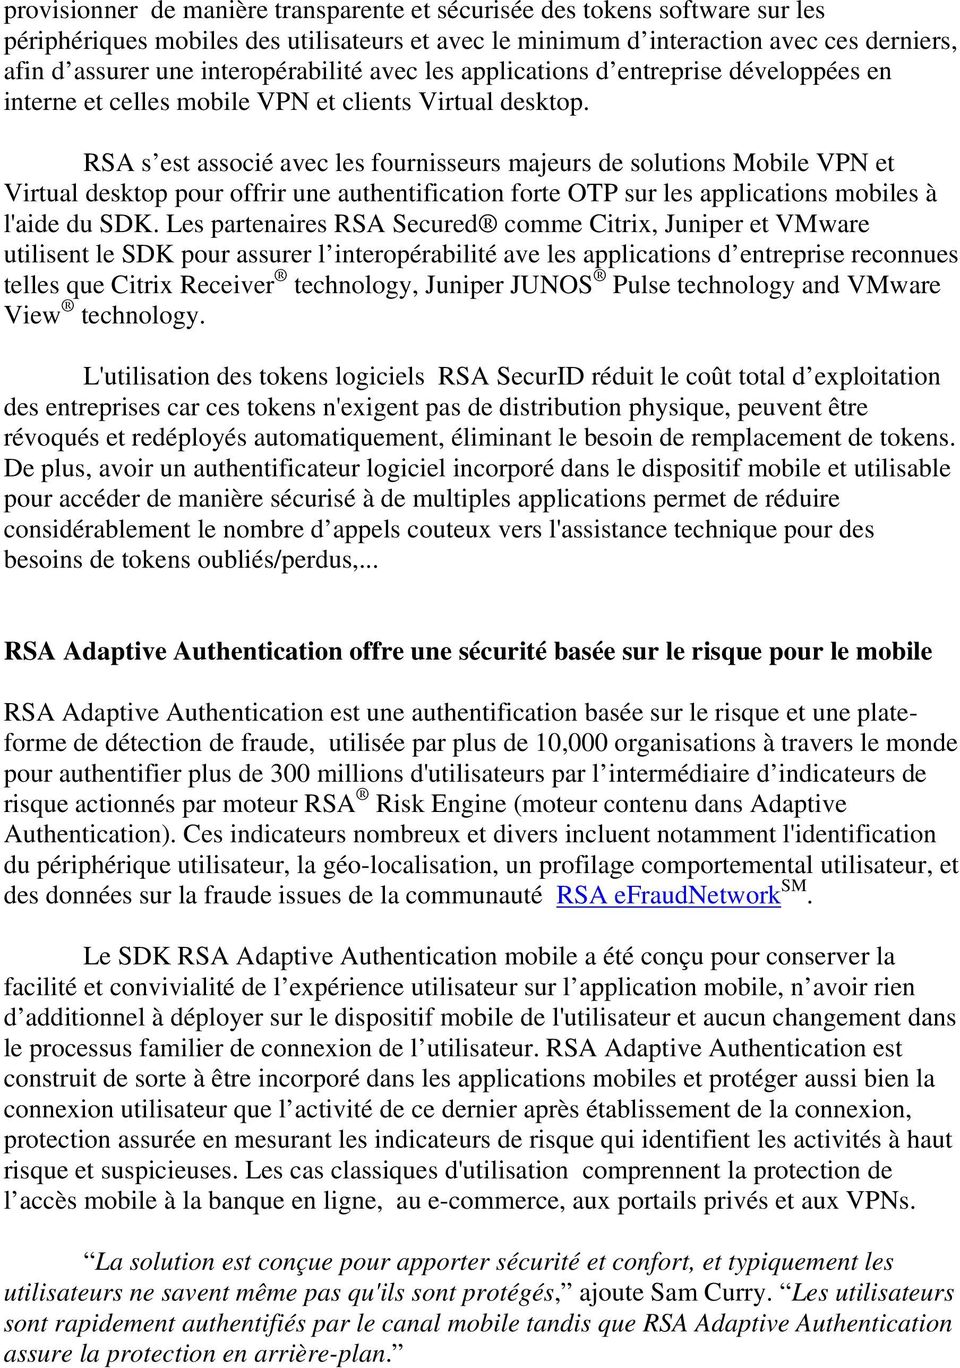 RSA s est associé avec les fournisseurs majeurs de solutions Mobile VPN et Virtual desktop pour offrir une authentification forte OTP sur les applications mobiles à l'aide du SDK.